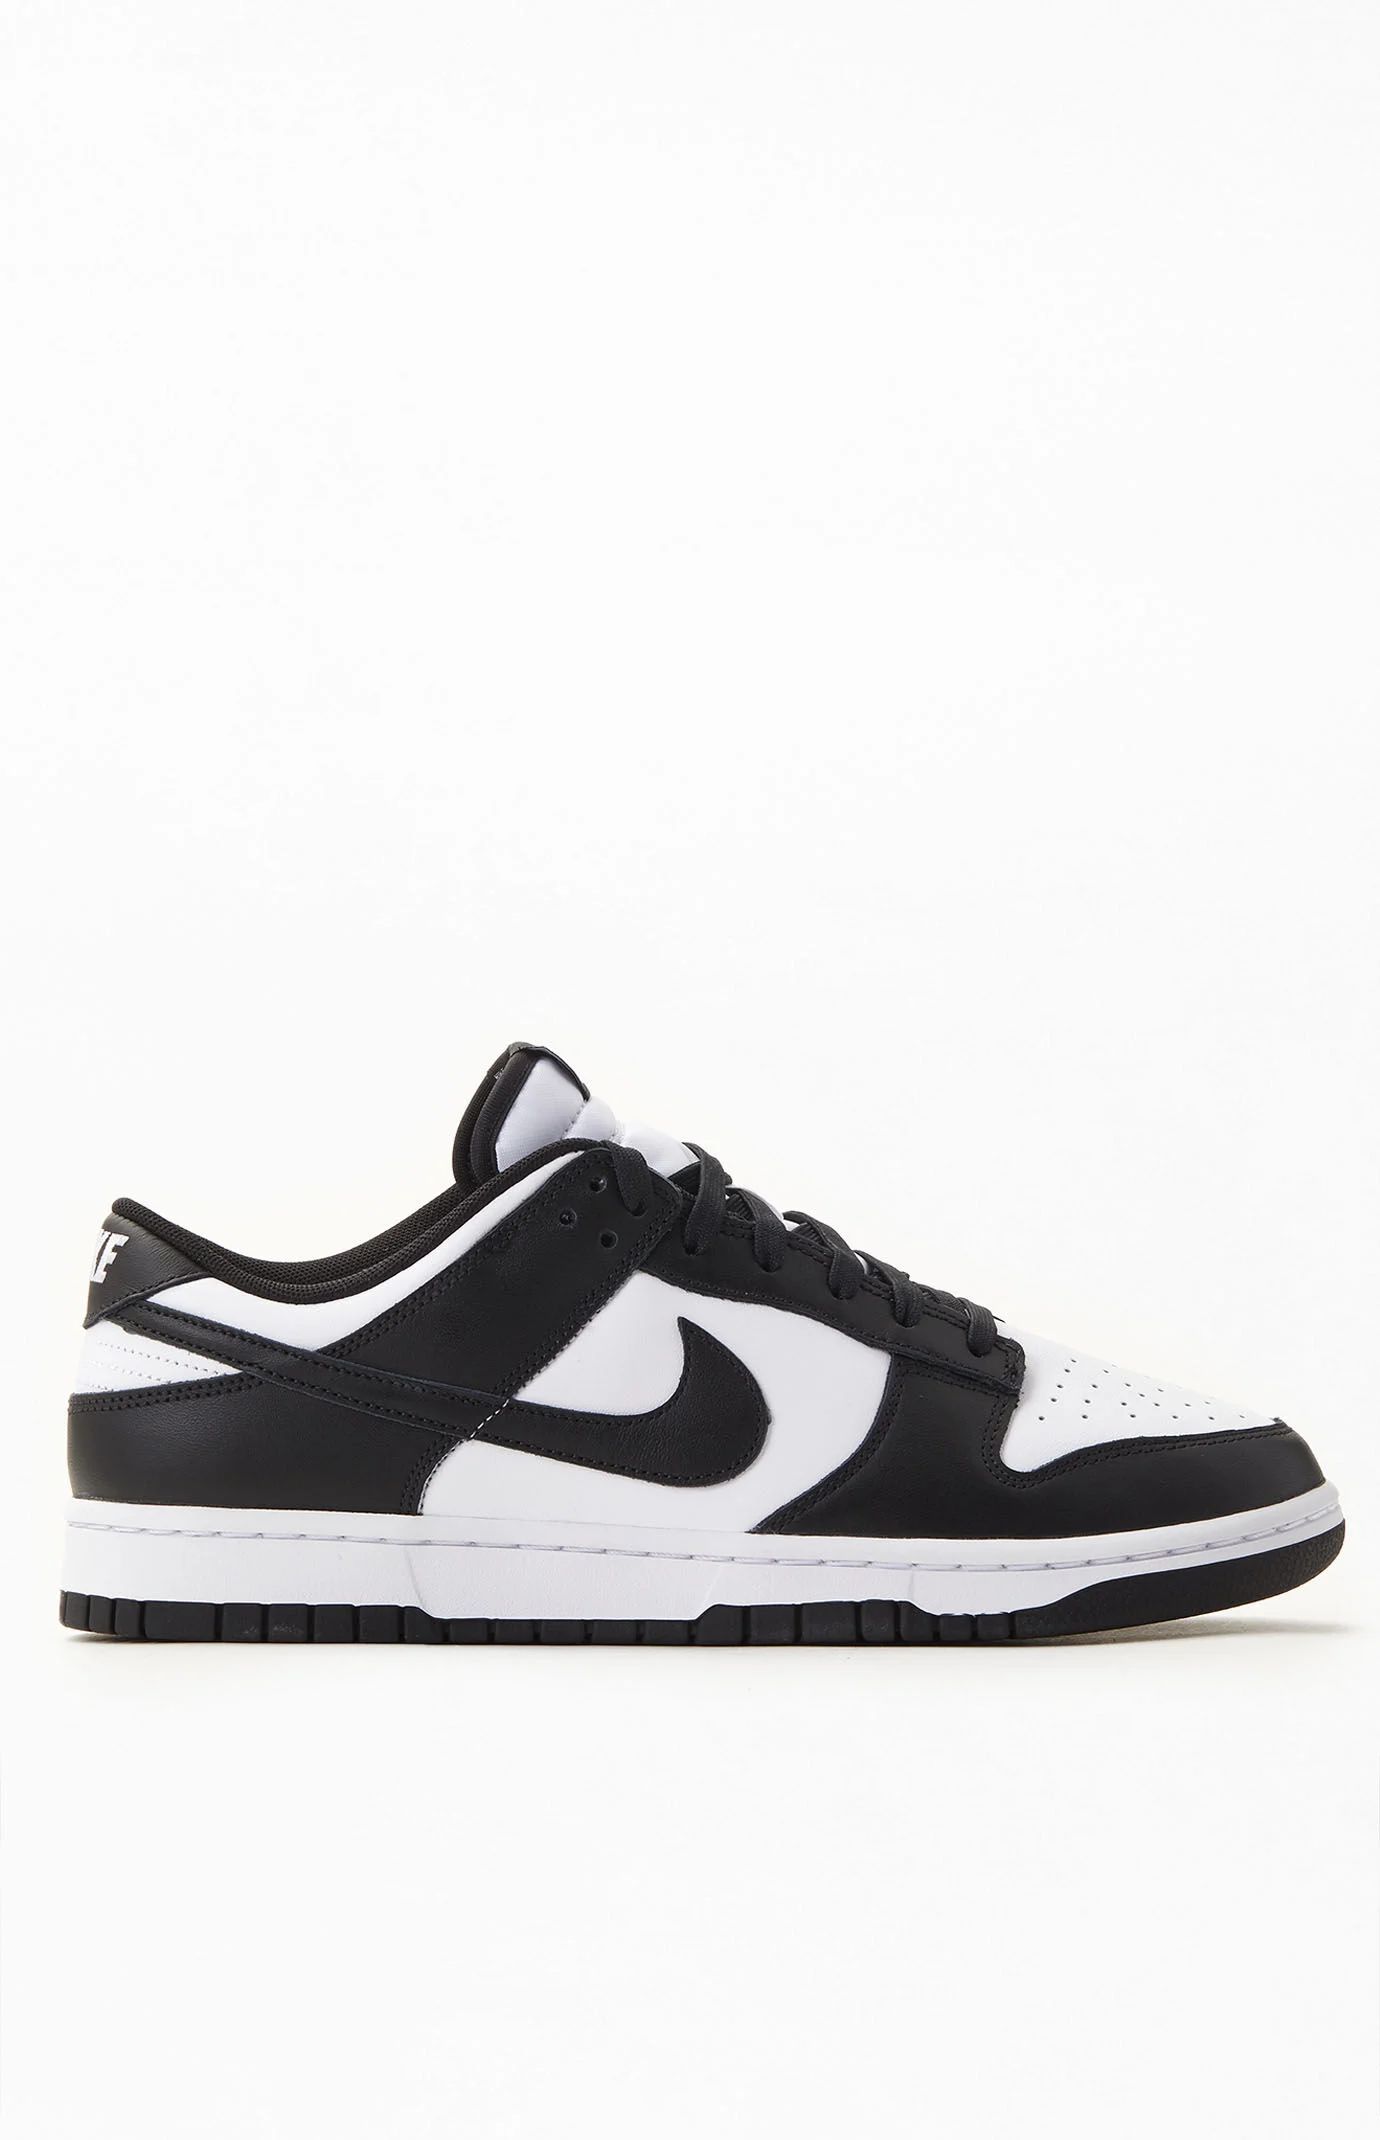 Nike Mens Dunk Low Panda Shoes - Black/white size M10|W11.5 | PacSun